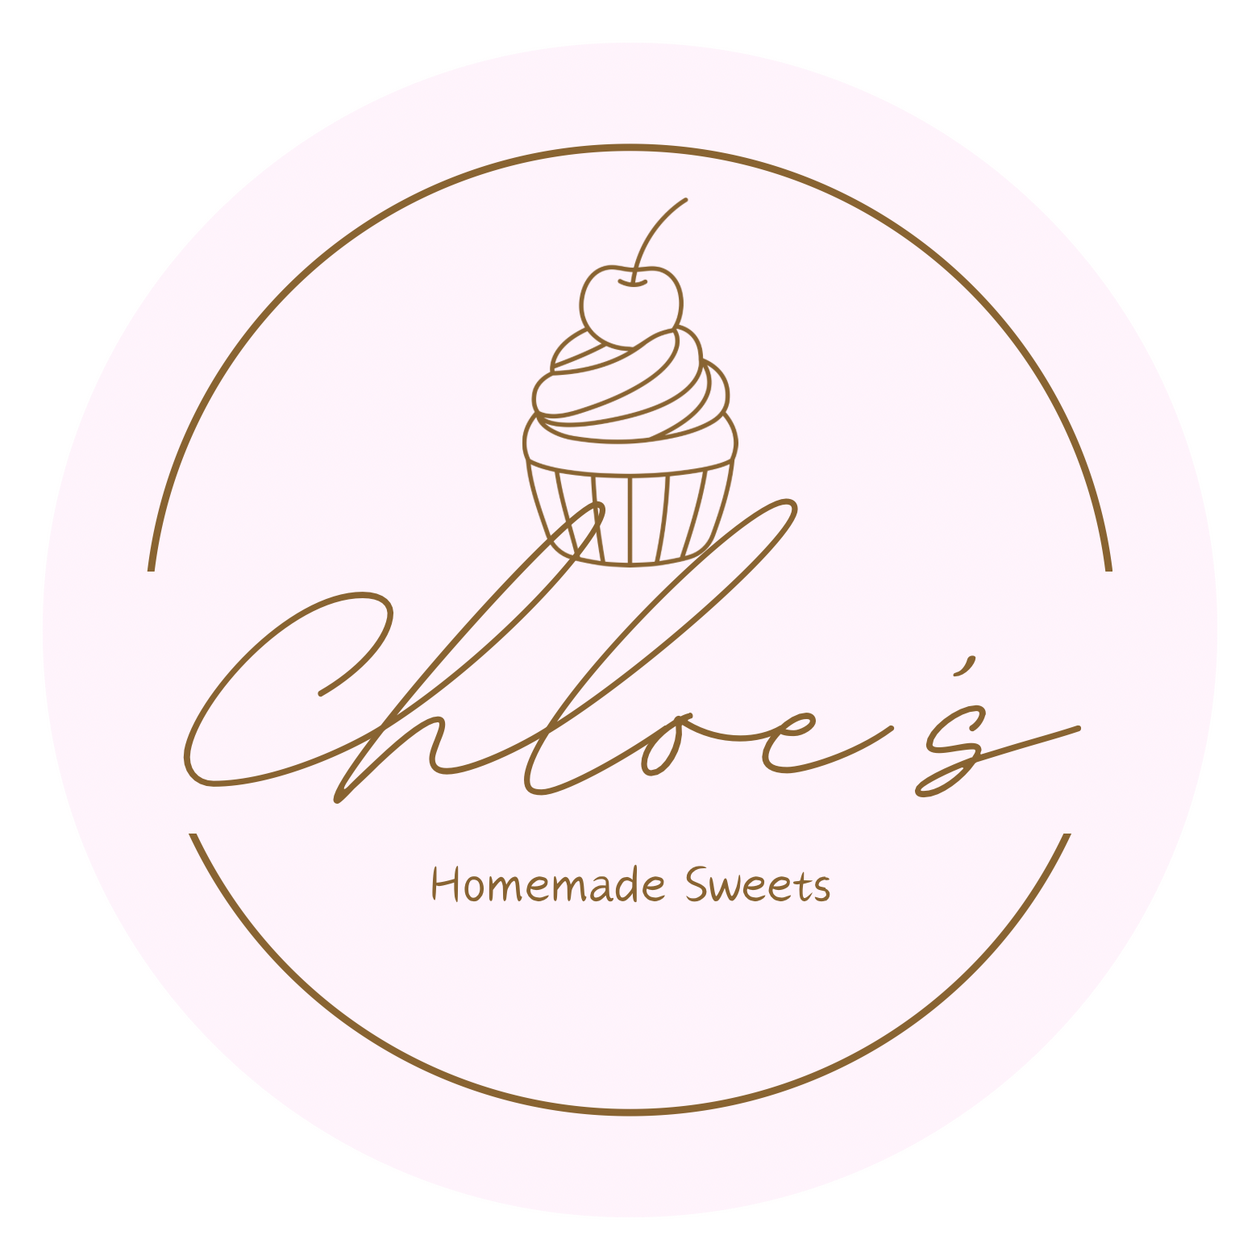 Chloe’s Homemade Sweets